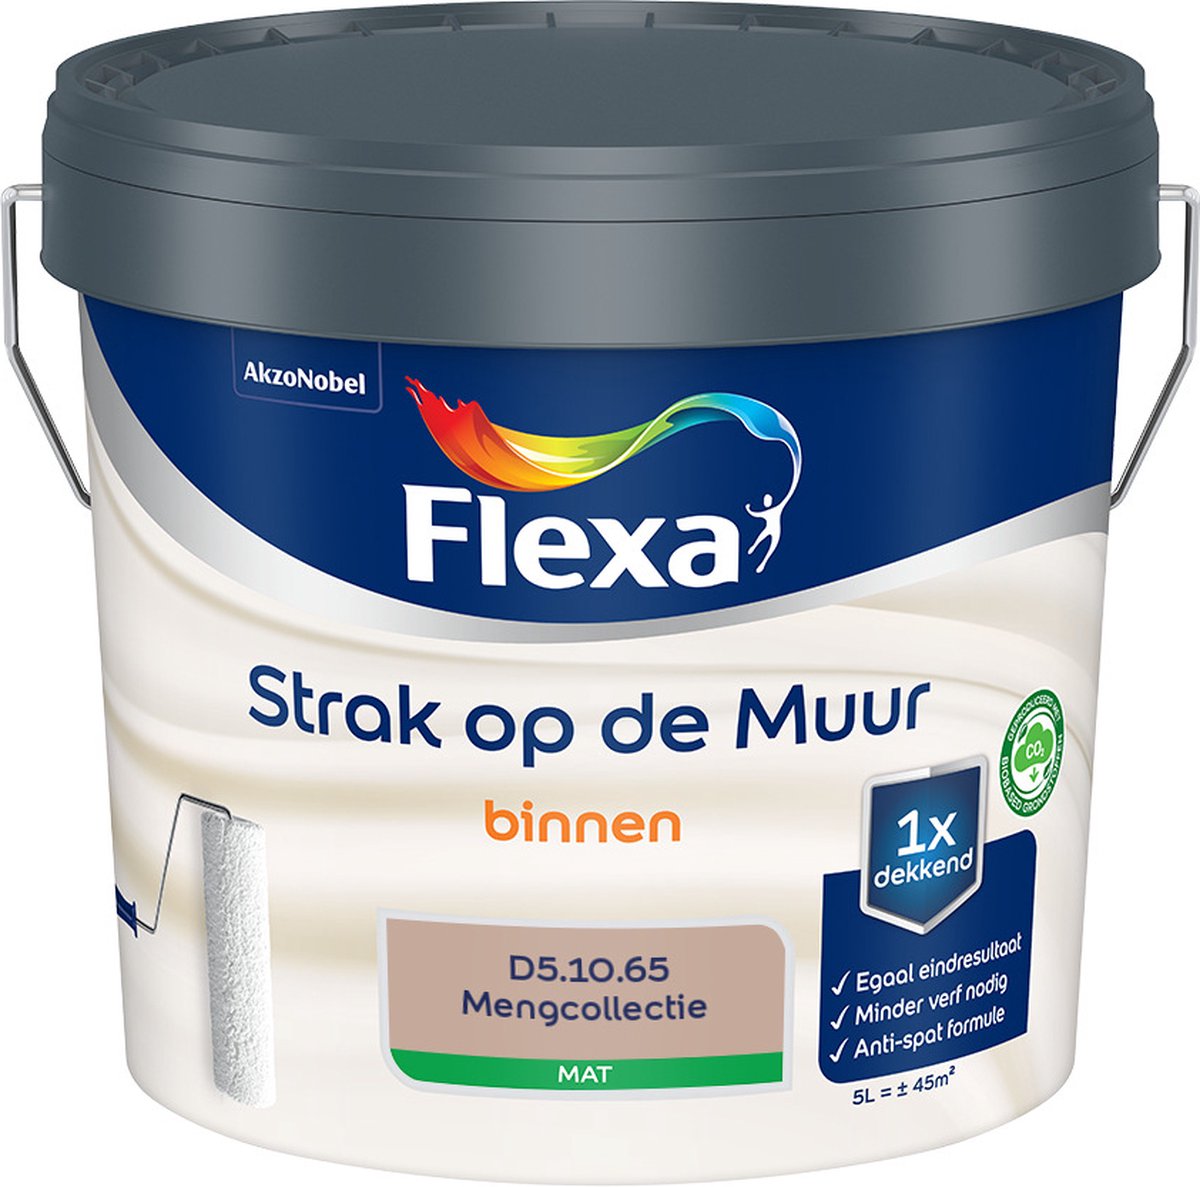 Flexa Strak op de muur - Muurverf - Mengcollectie - D5.10.65 - 5 Liter